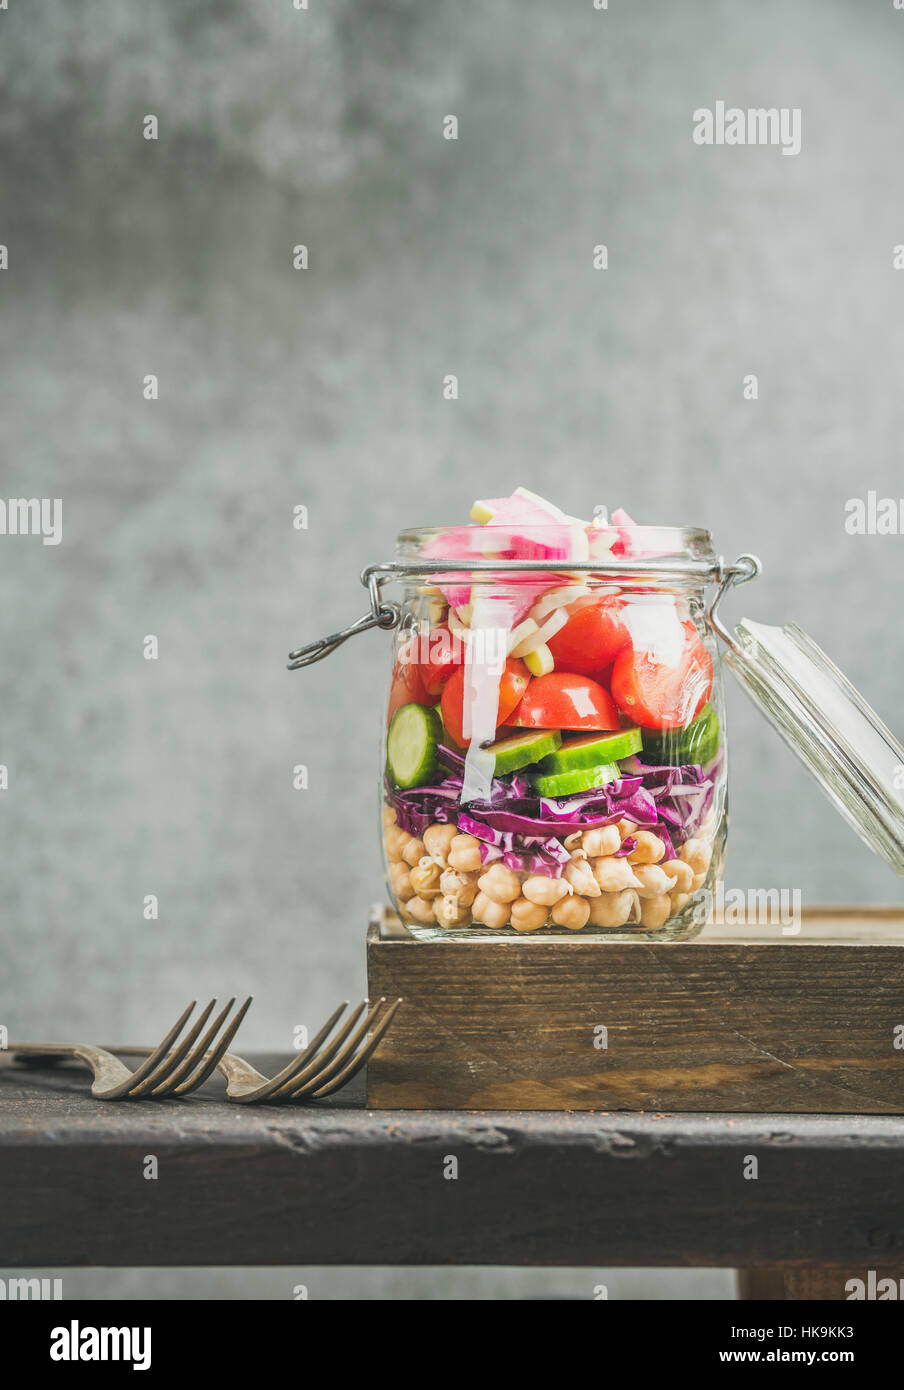 Gesundes Mittagessen zum Mitnehmen-Glas. Gemüse und Kichererbsen sprießen geschichteten vegane Salat im Glas Glas, graue Betonwand Hintergrund, Textfreiraum, selektive focu Stockfoto